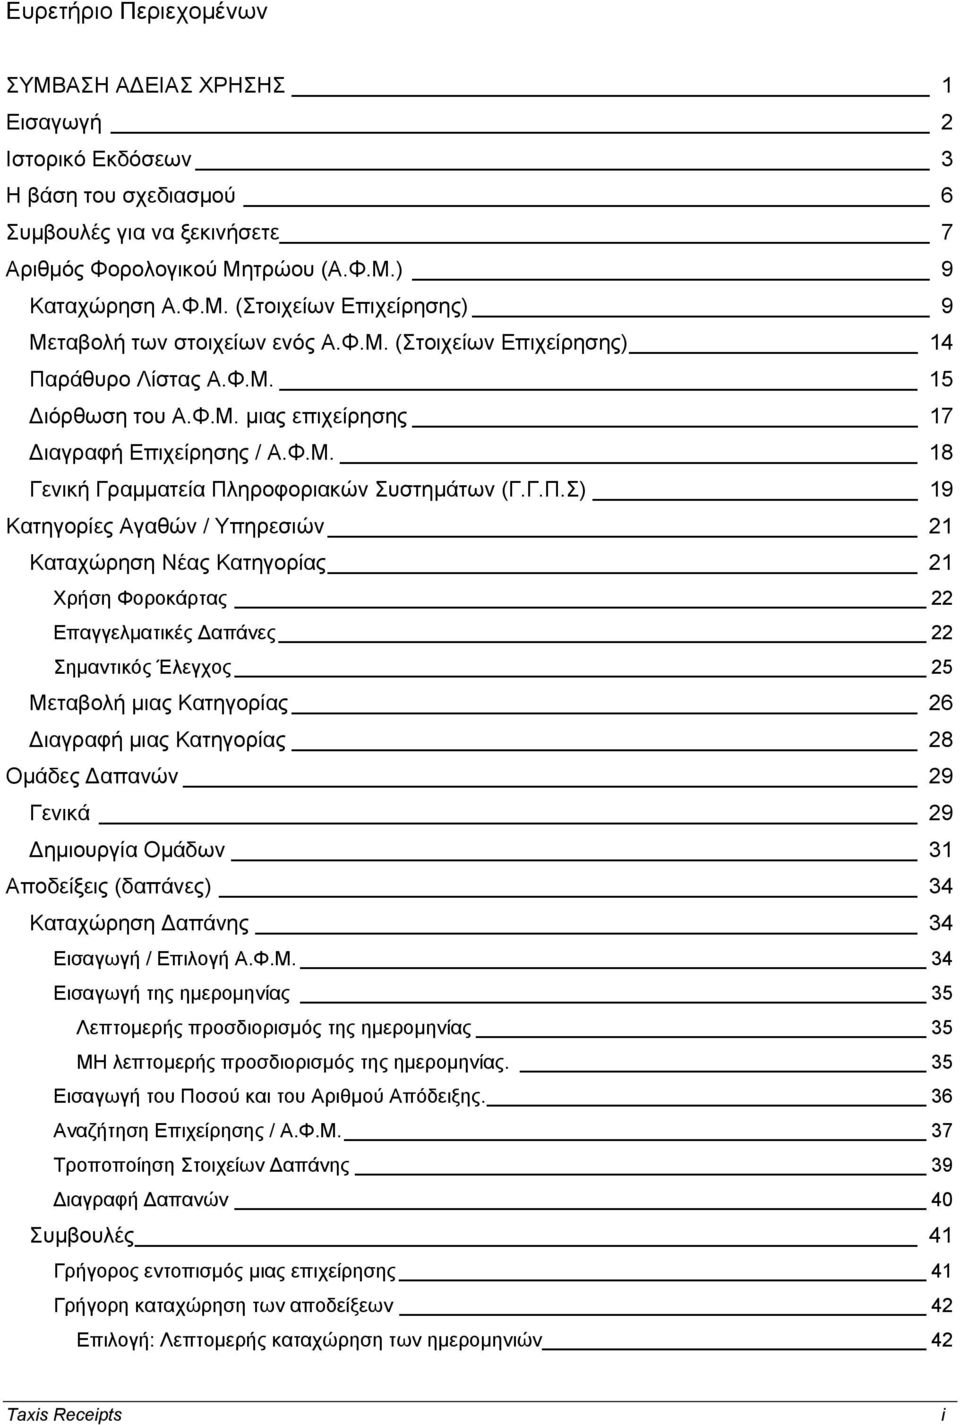 ράθυρο Λίστας Α.Φ.Μ. 15 ιόρθωση του Α.Φ.Μ. μιας επιχείρησης 17 ιαγραφή Επιχείρησης / Α.Φ.Μ. 18 Γενική Γραμματεία Πλ